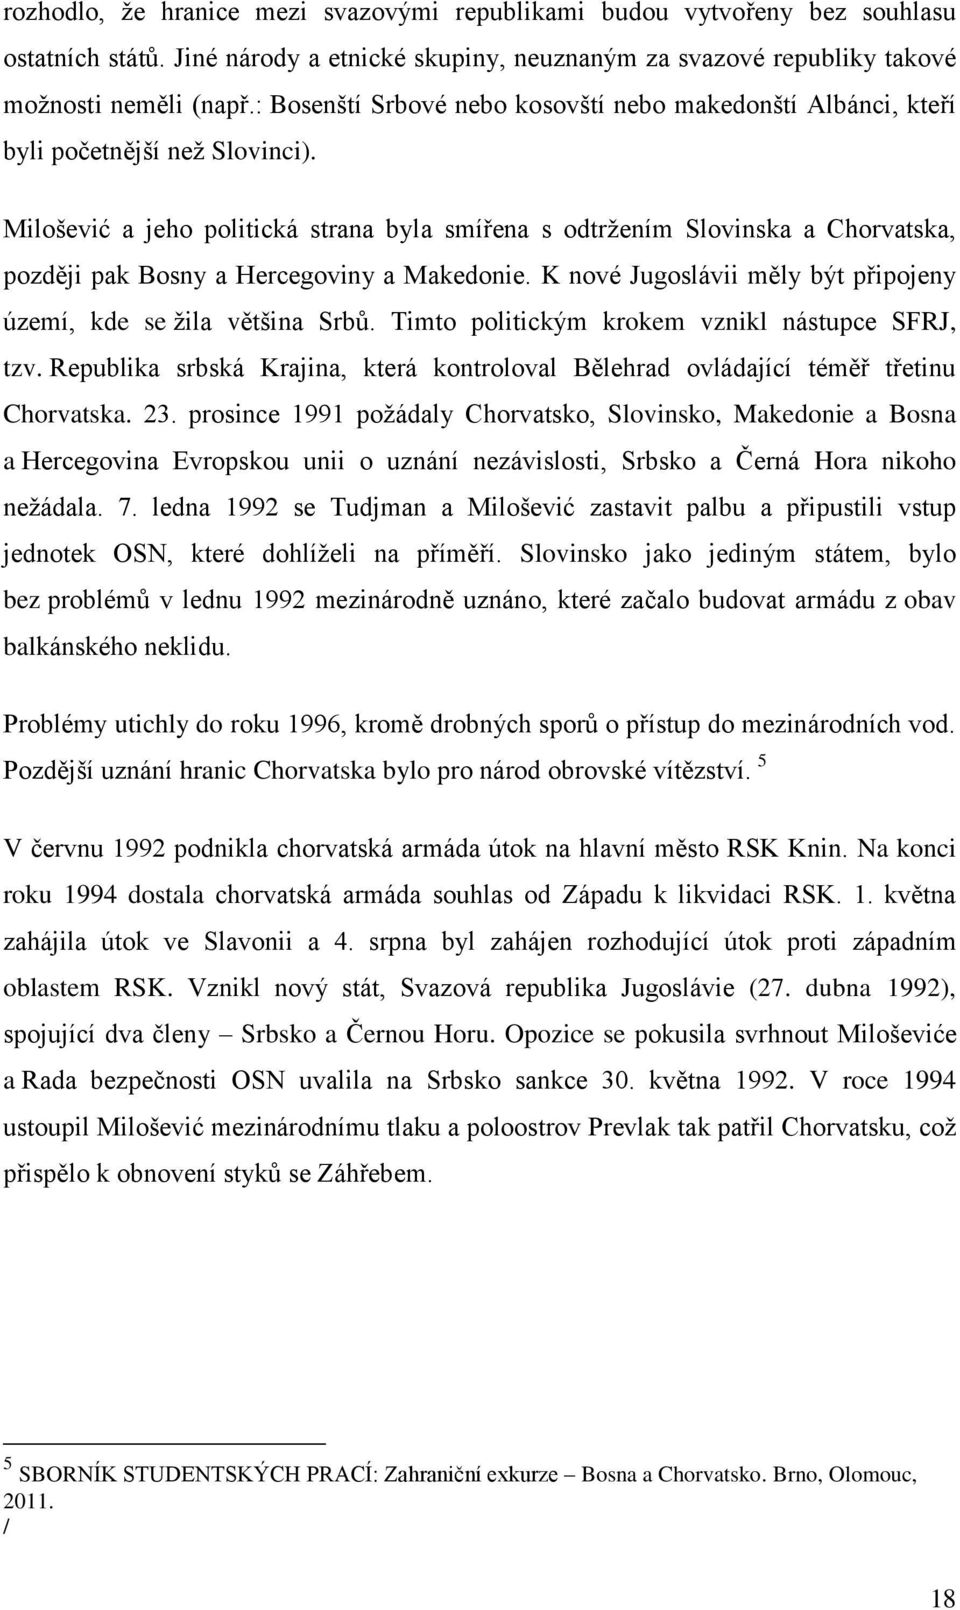 Milošević a jeho politická strana byla smířena s odtržením Slovinska a Chorvatska, později pak Bosny a Hercegoviny a Makedonie. K nové Jugoslávii měly být připojeny území, kde se žila většina Srbů.